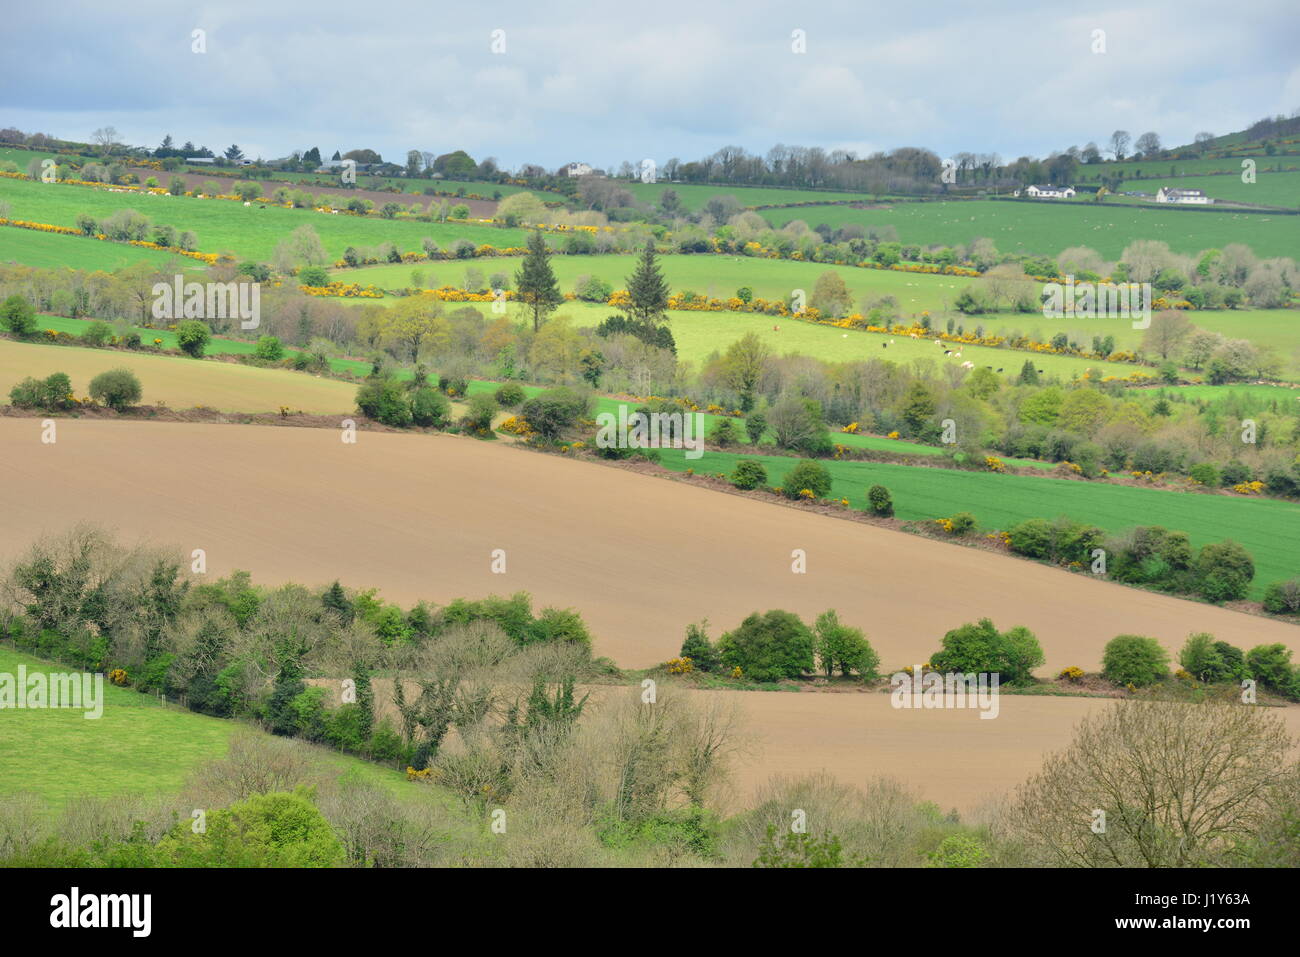 The farmland of Ireland Stock Photo